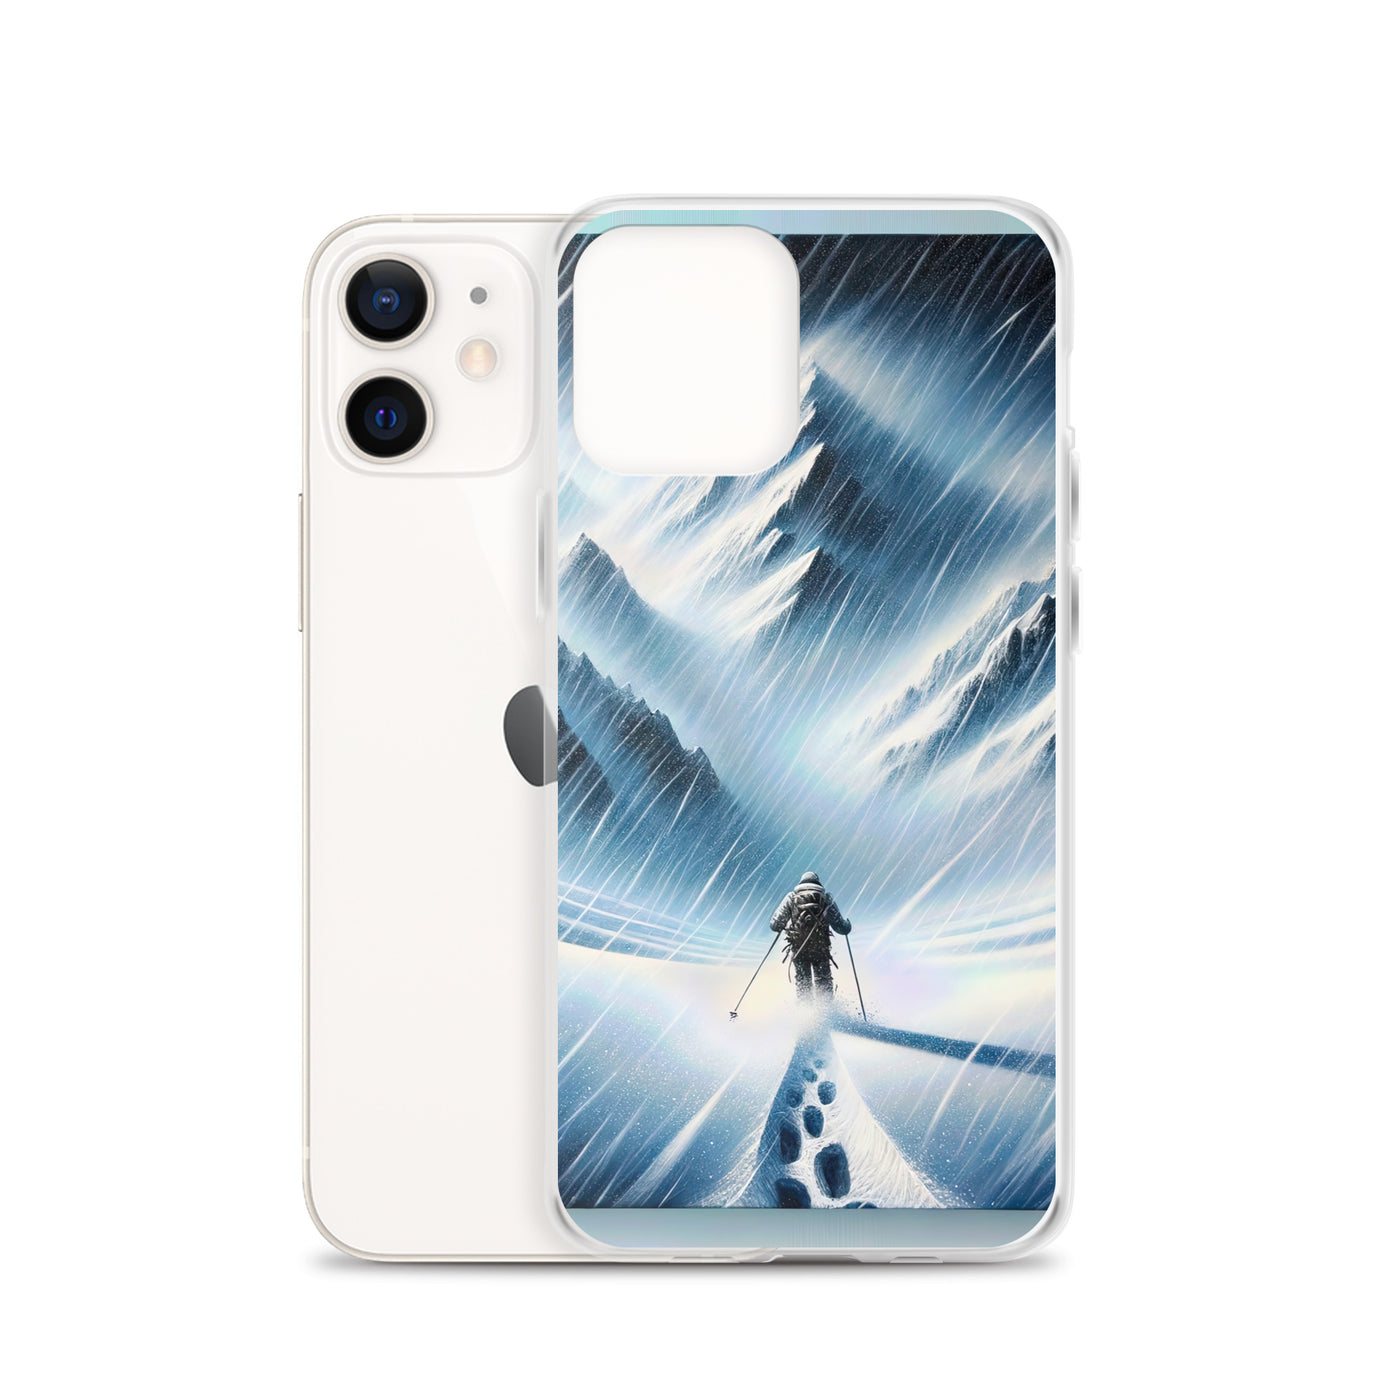 Wanderer und Bergsteiger im Schneesturm: Acrylgemälde der Alpen - iPhone Schutzhülle (durchsichtig) wandern xxx yyy zzz